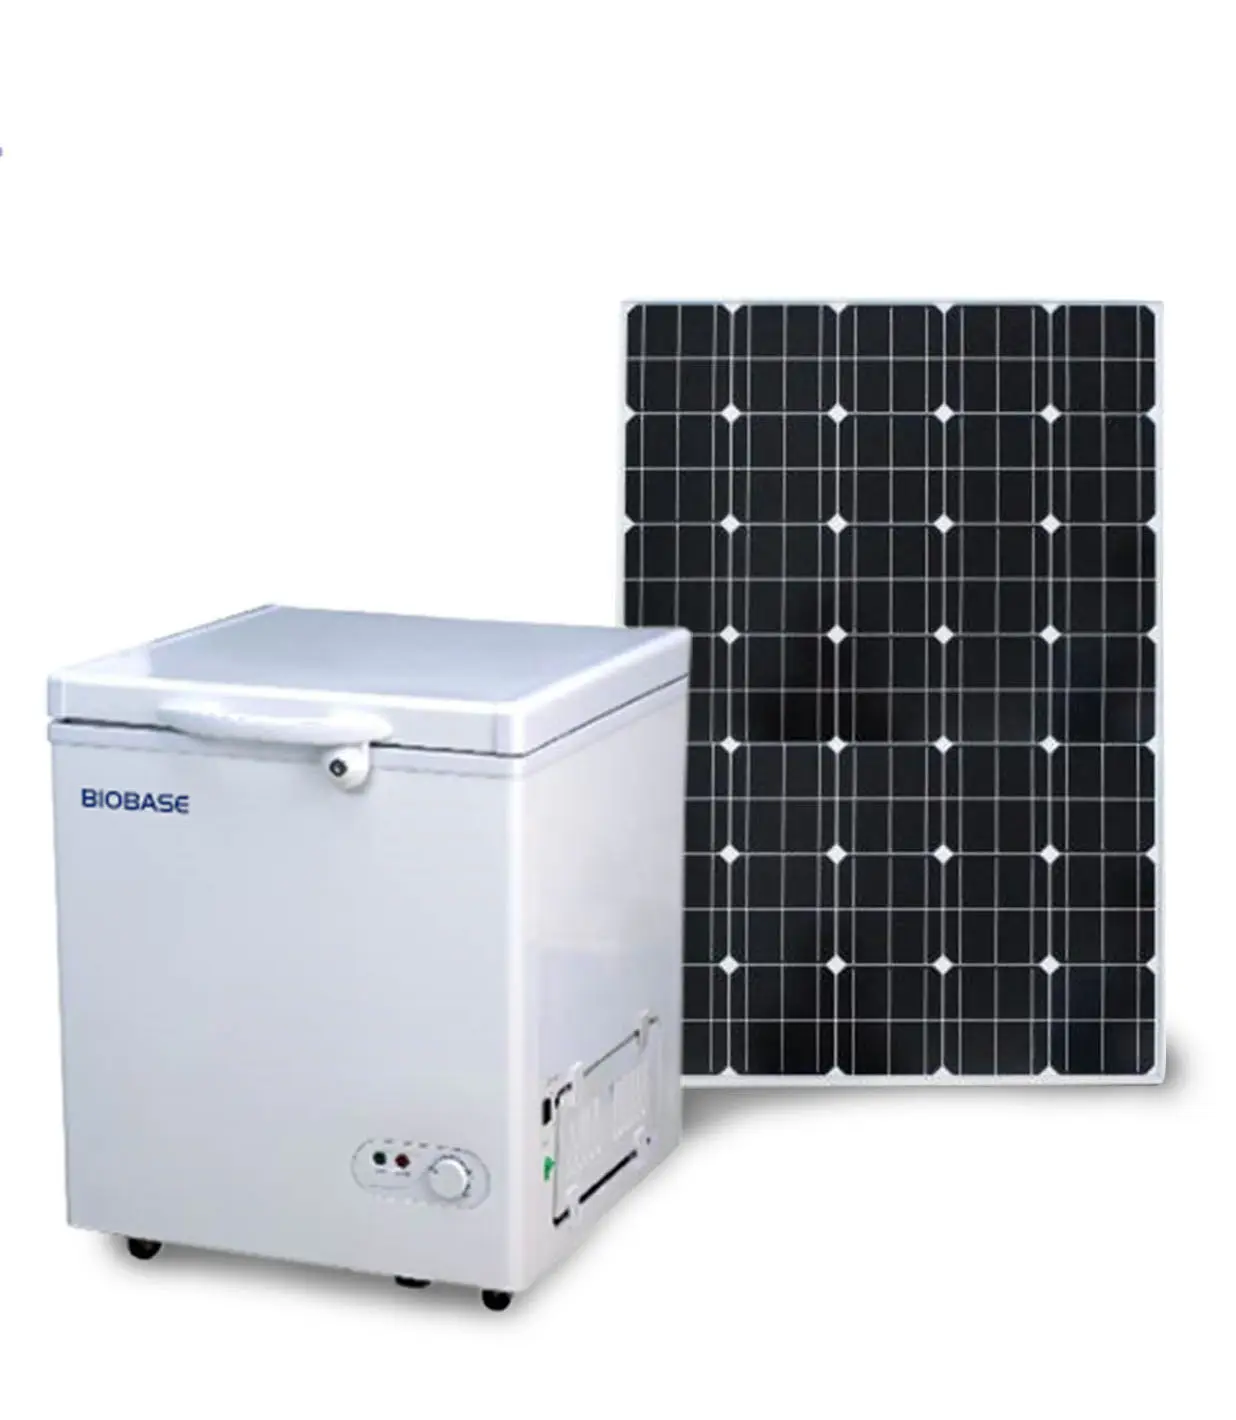 Biobase-refrigerador Solar de china, 12V, 24V, refrigerador, congelador